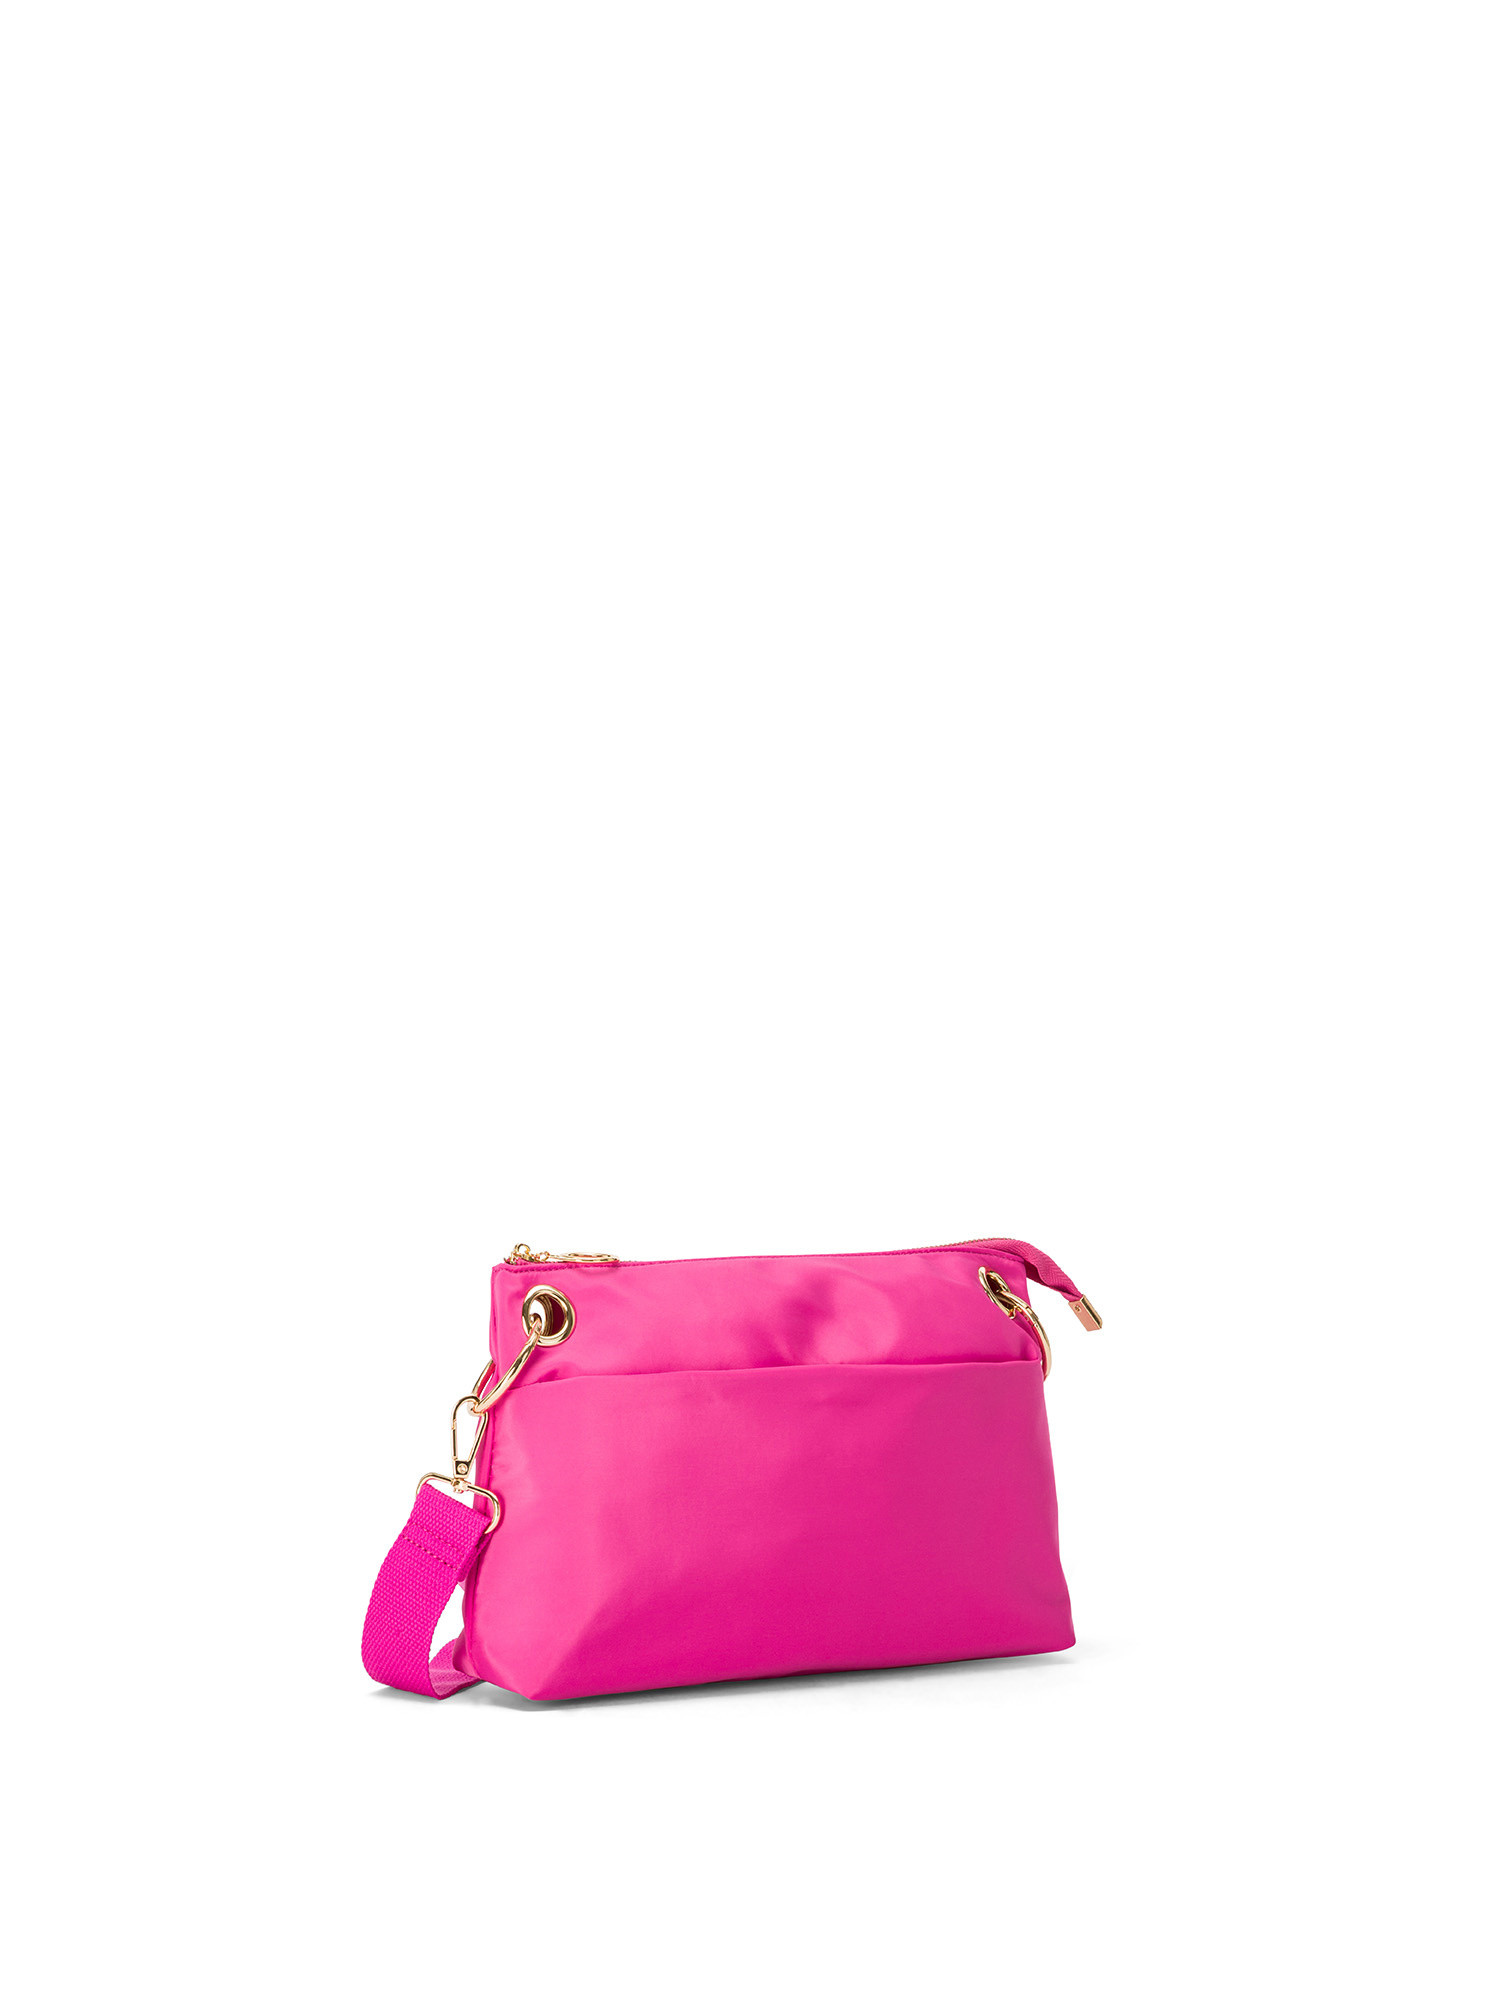 Koan - Messenger bag in nylon fabric, Dark Pink, large image number 1